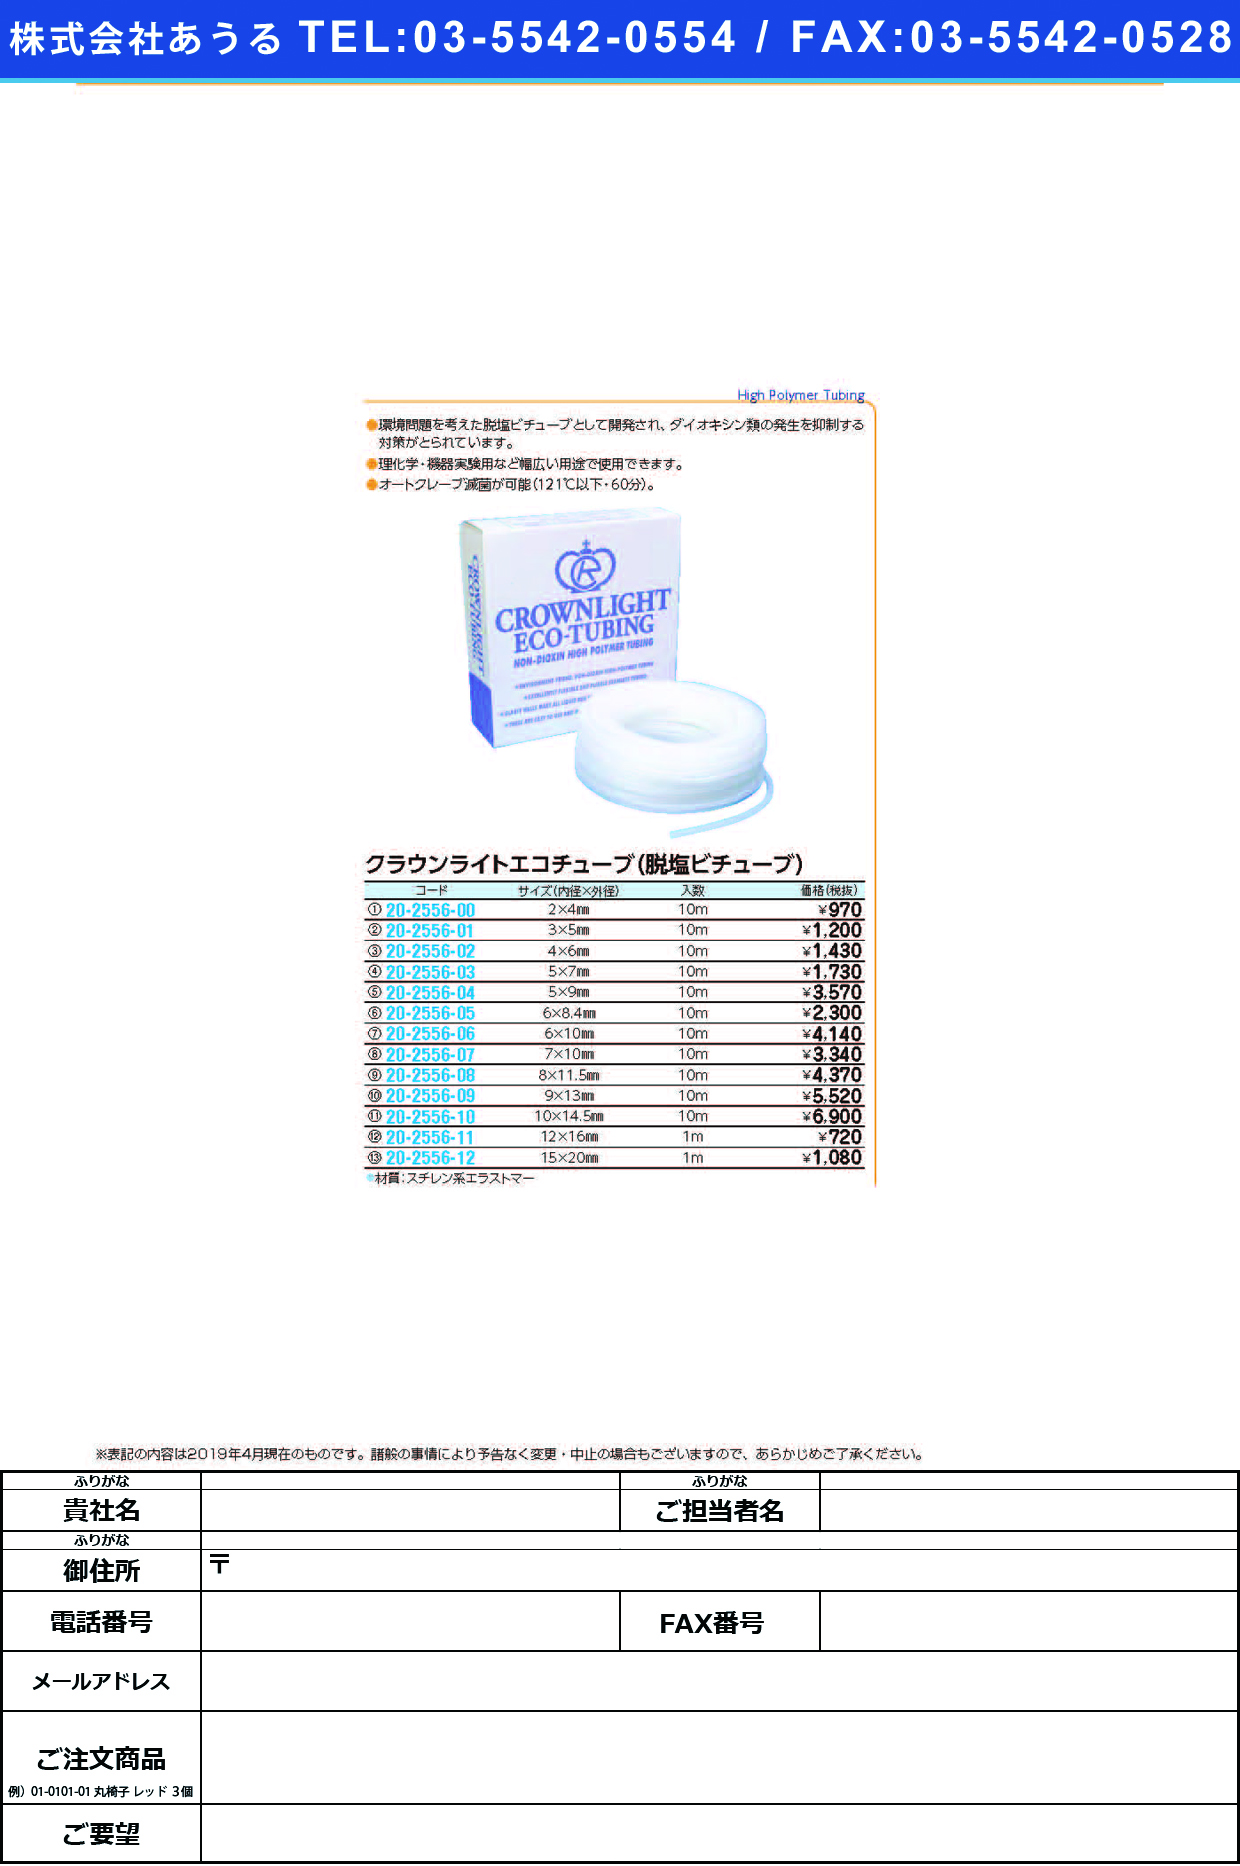 (20-2556-03)クラウンライトエコチューブ 5.0X7.0(10Mｲﾘ) ｸﾗｳﾝﾗｲﾄｴｺﾁｭｰﾌﾞ【1袋単位】【2019年カタログ商品】